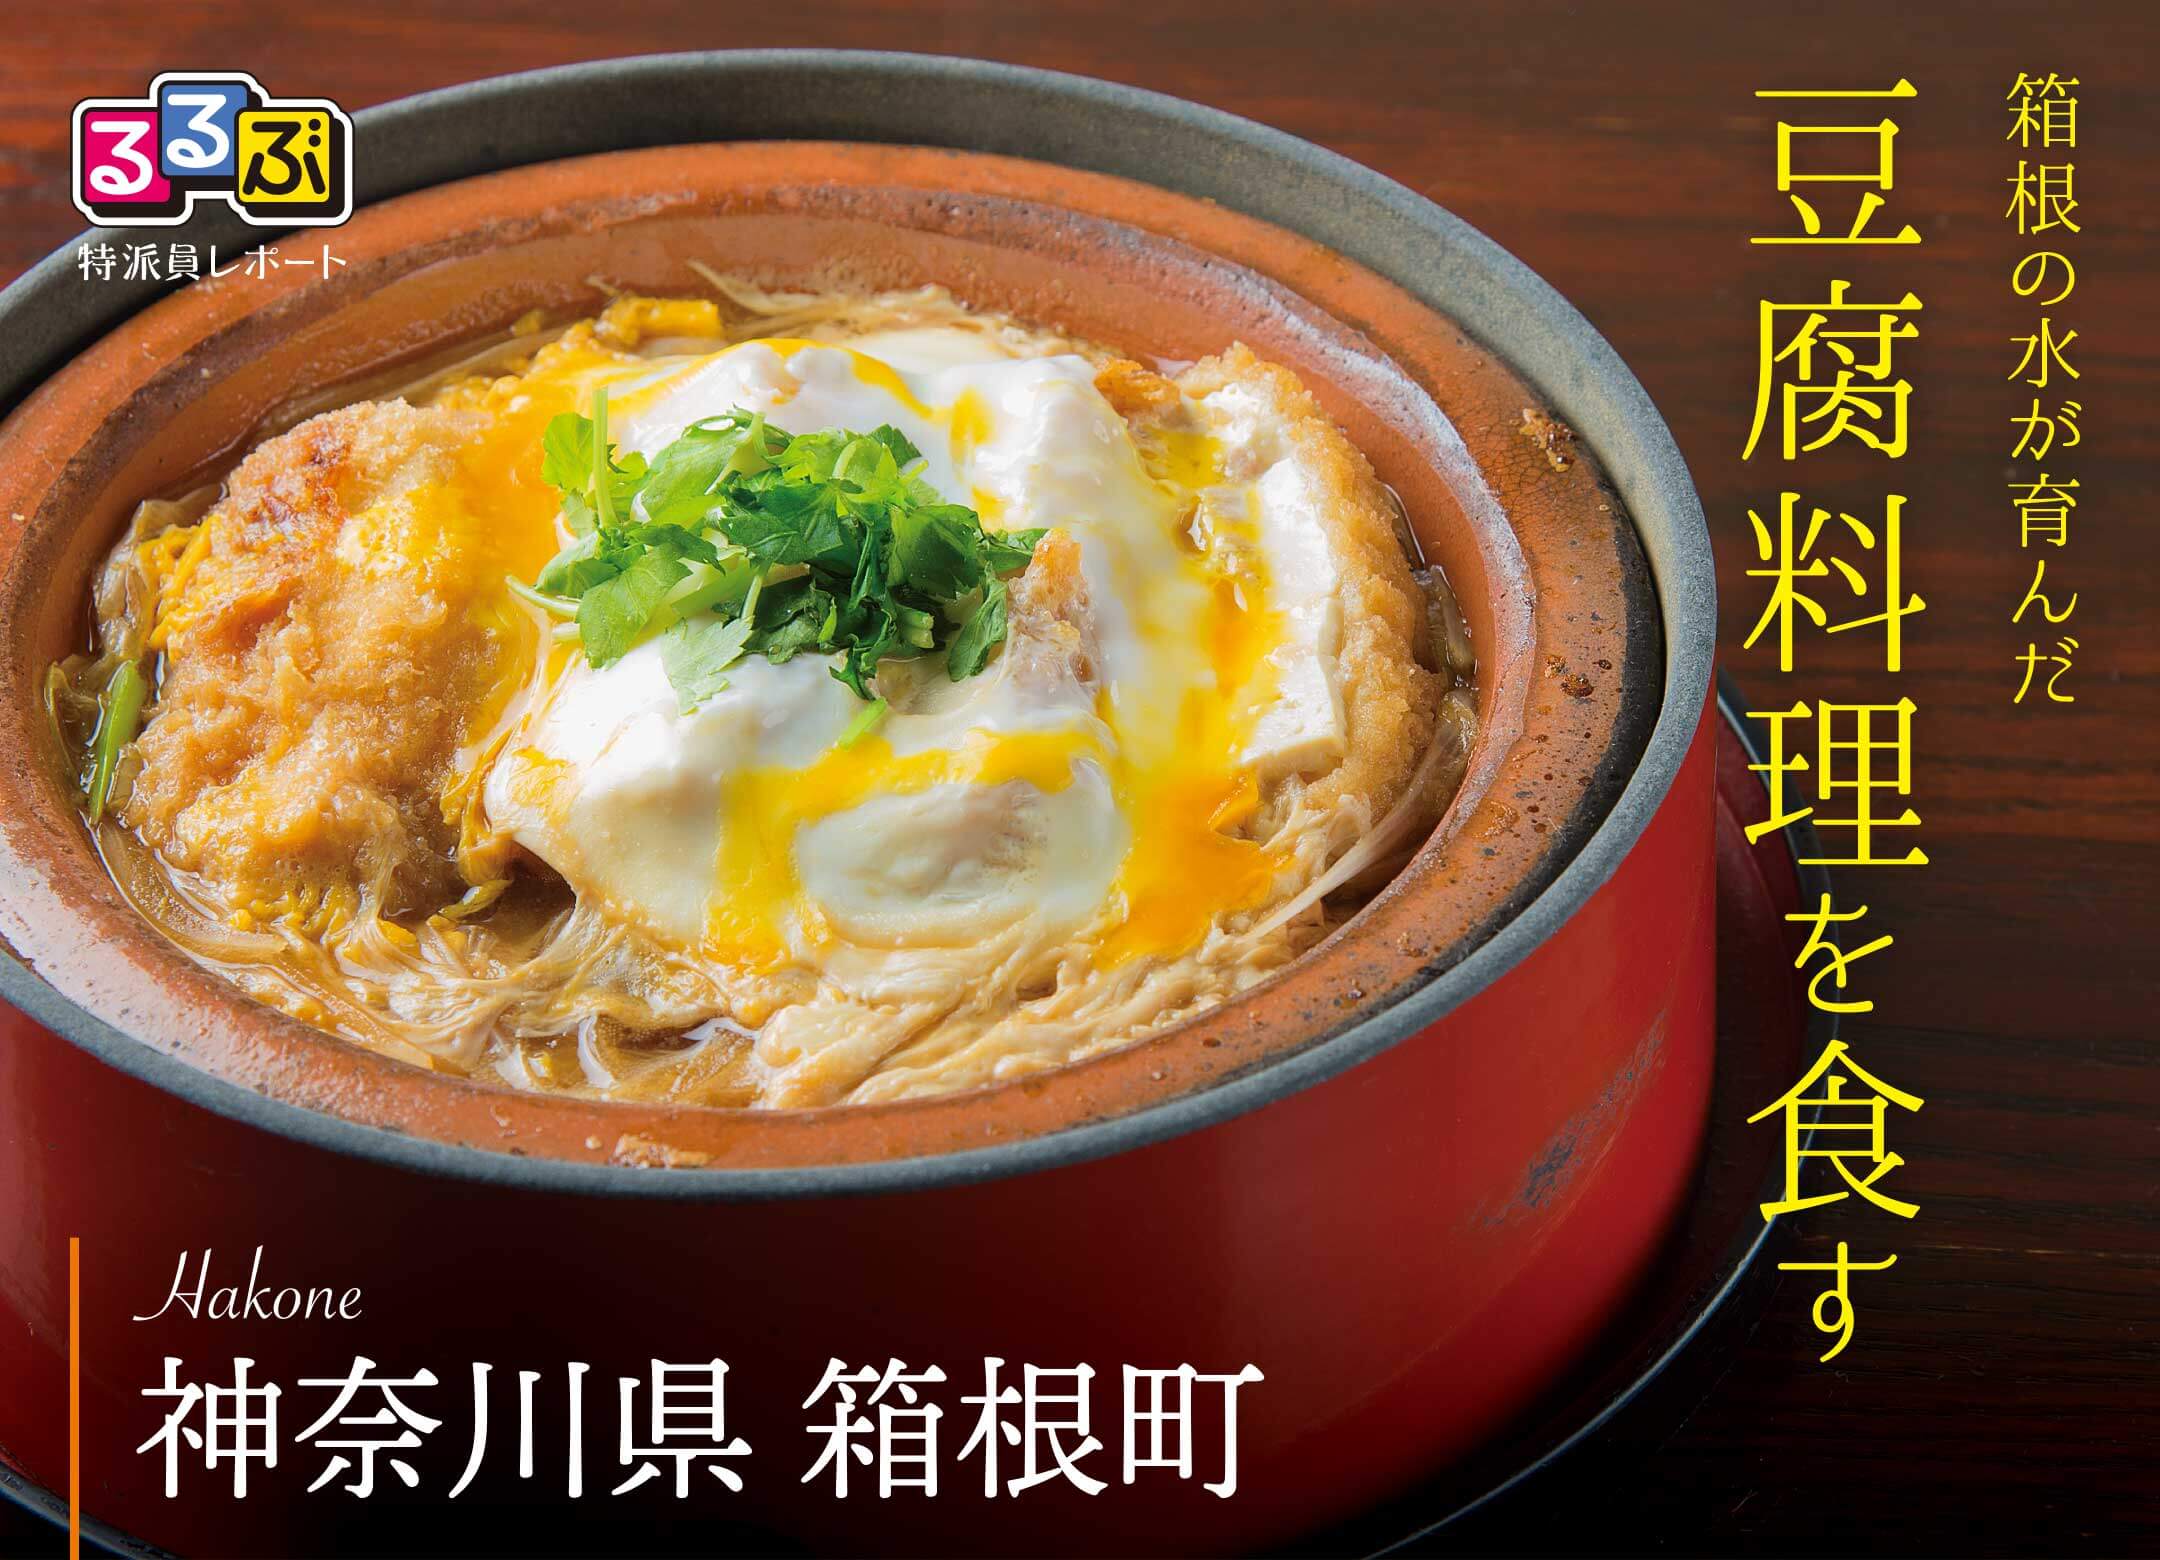 箱根の豆腐料理を食す | 神奈川県箱根町 の旅行レポート